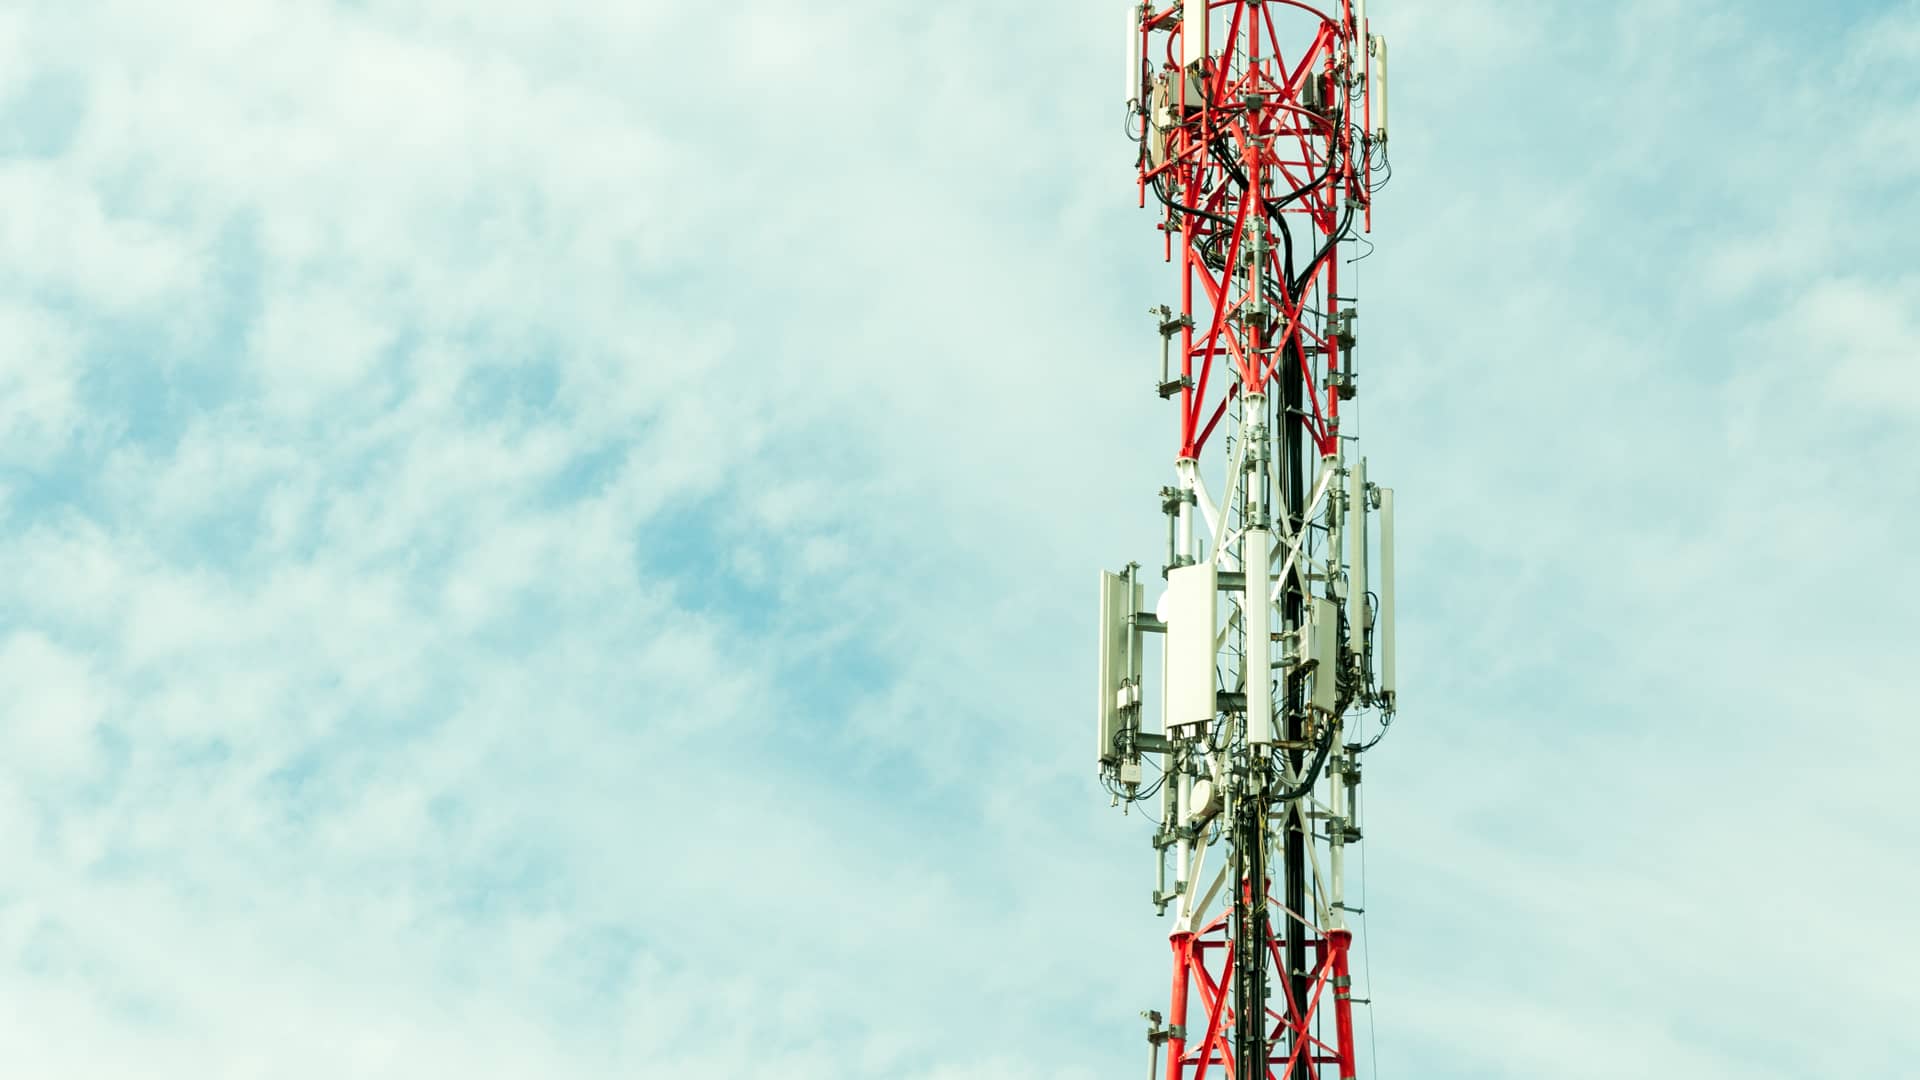 Antenas de telecomunicaciones al aire libre simbolizando la cobertura de qbocel